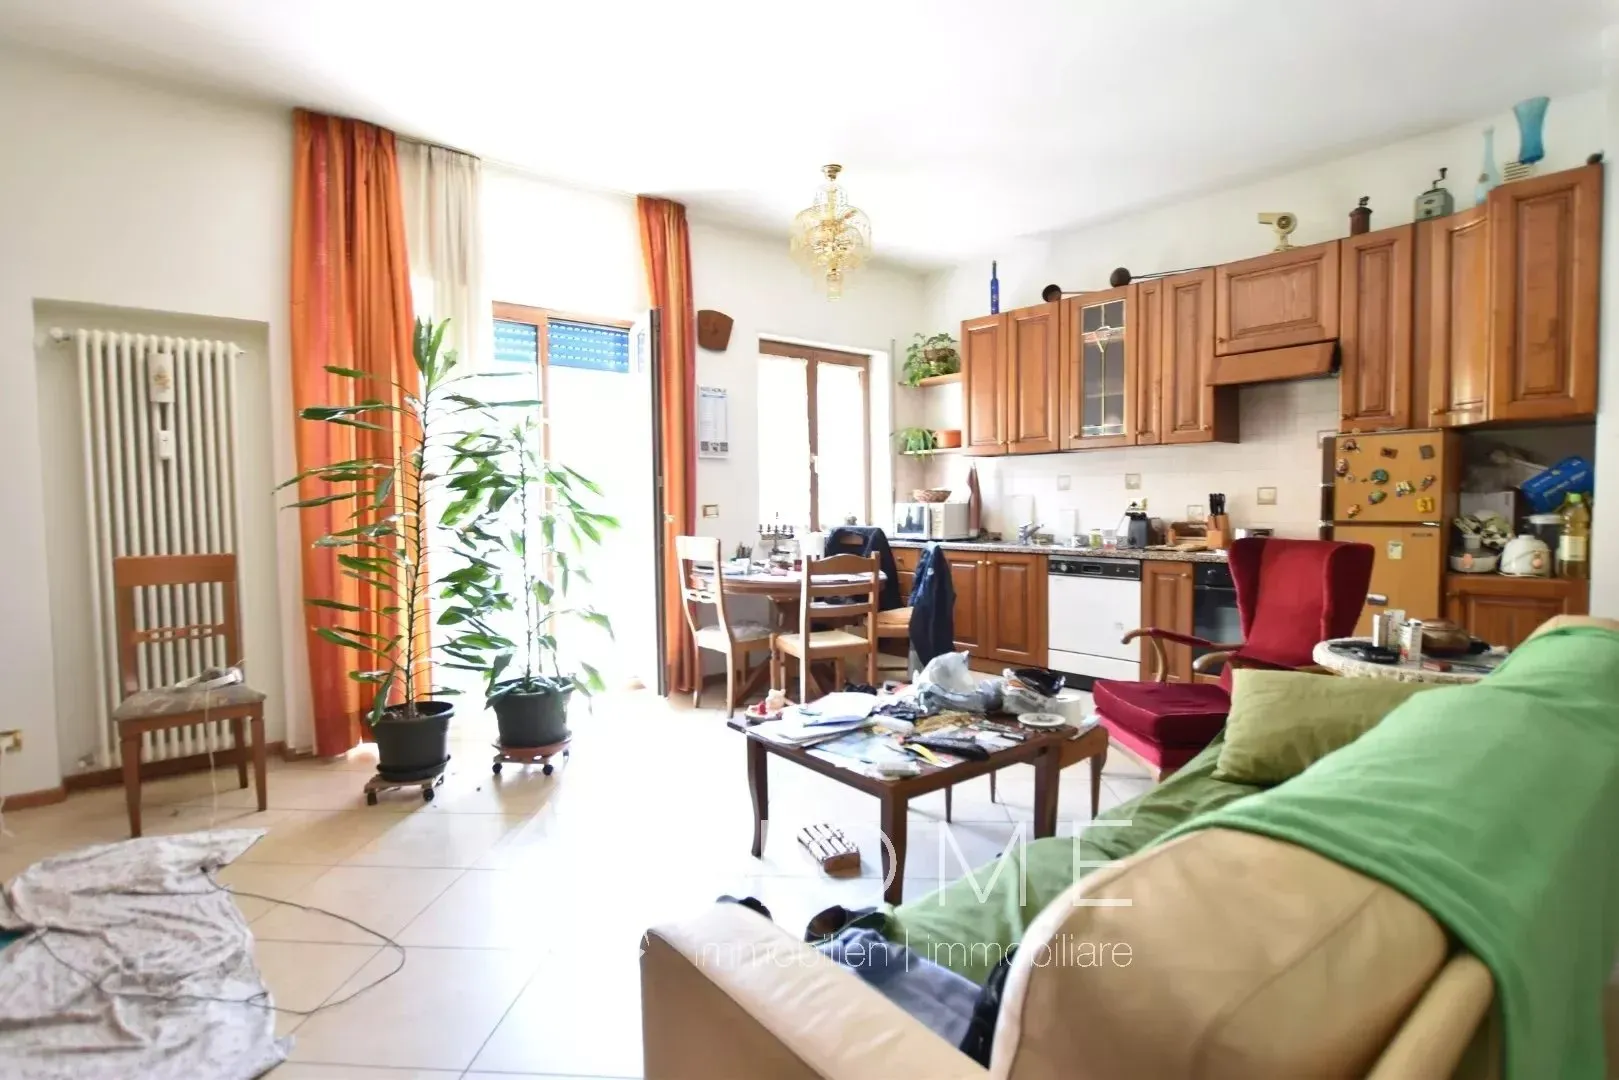 Immagine per Appartamento in vendita a Bolzano via Dalmazia